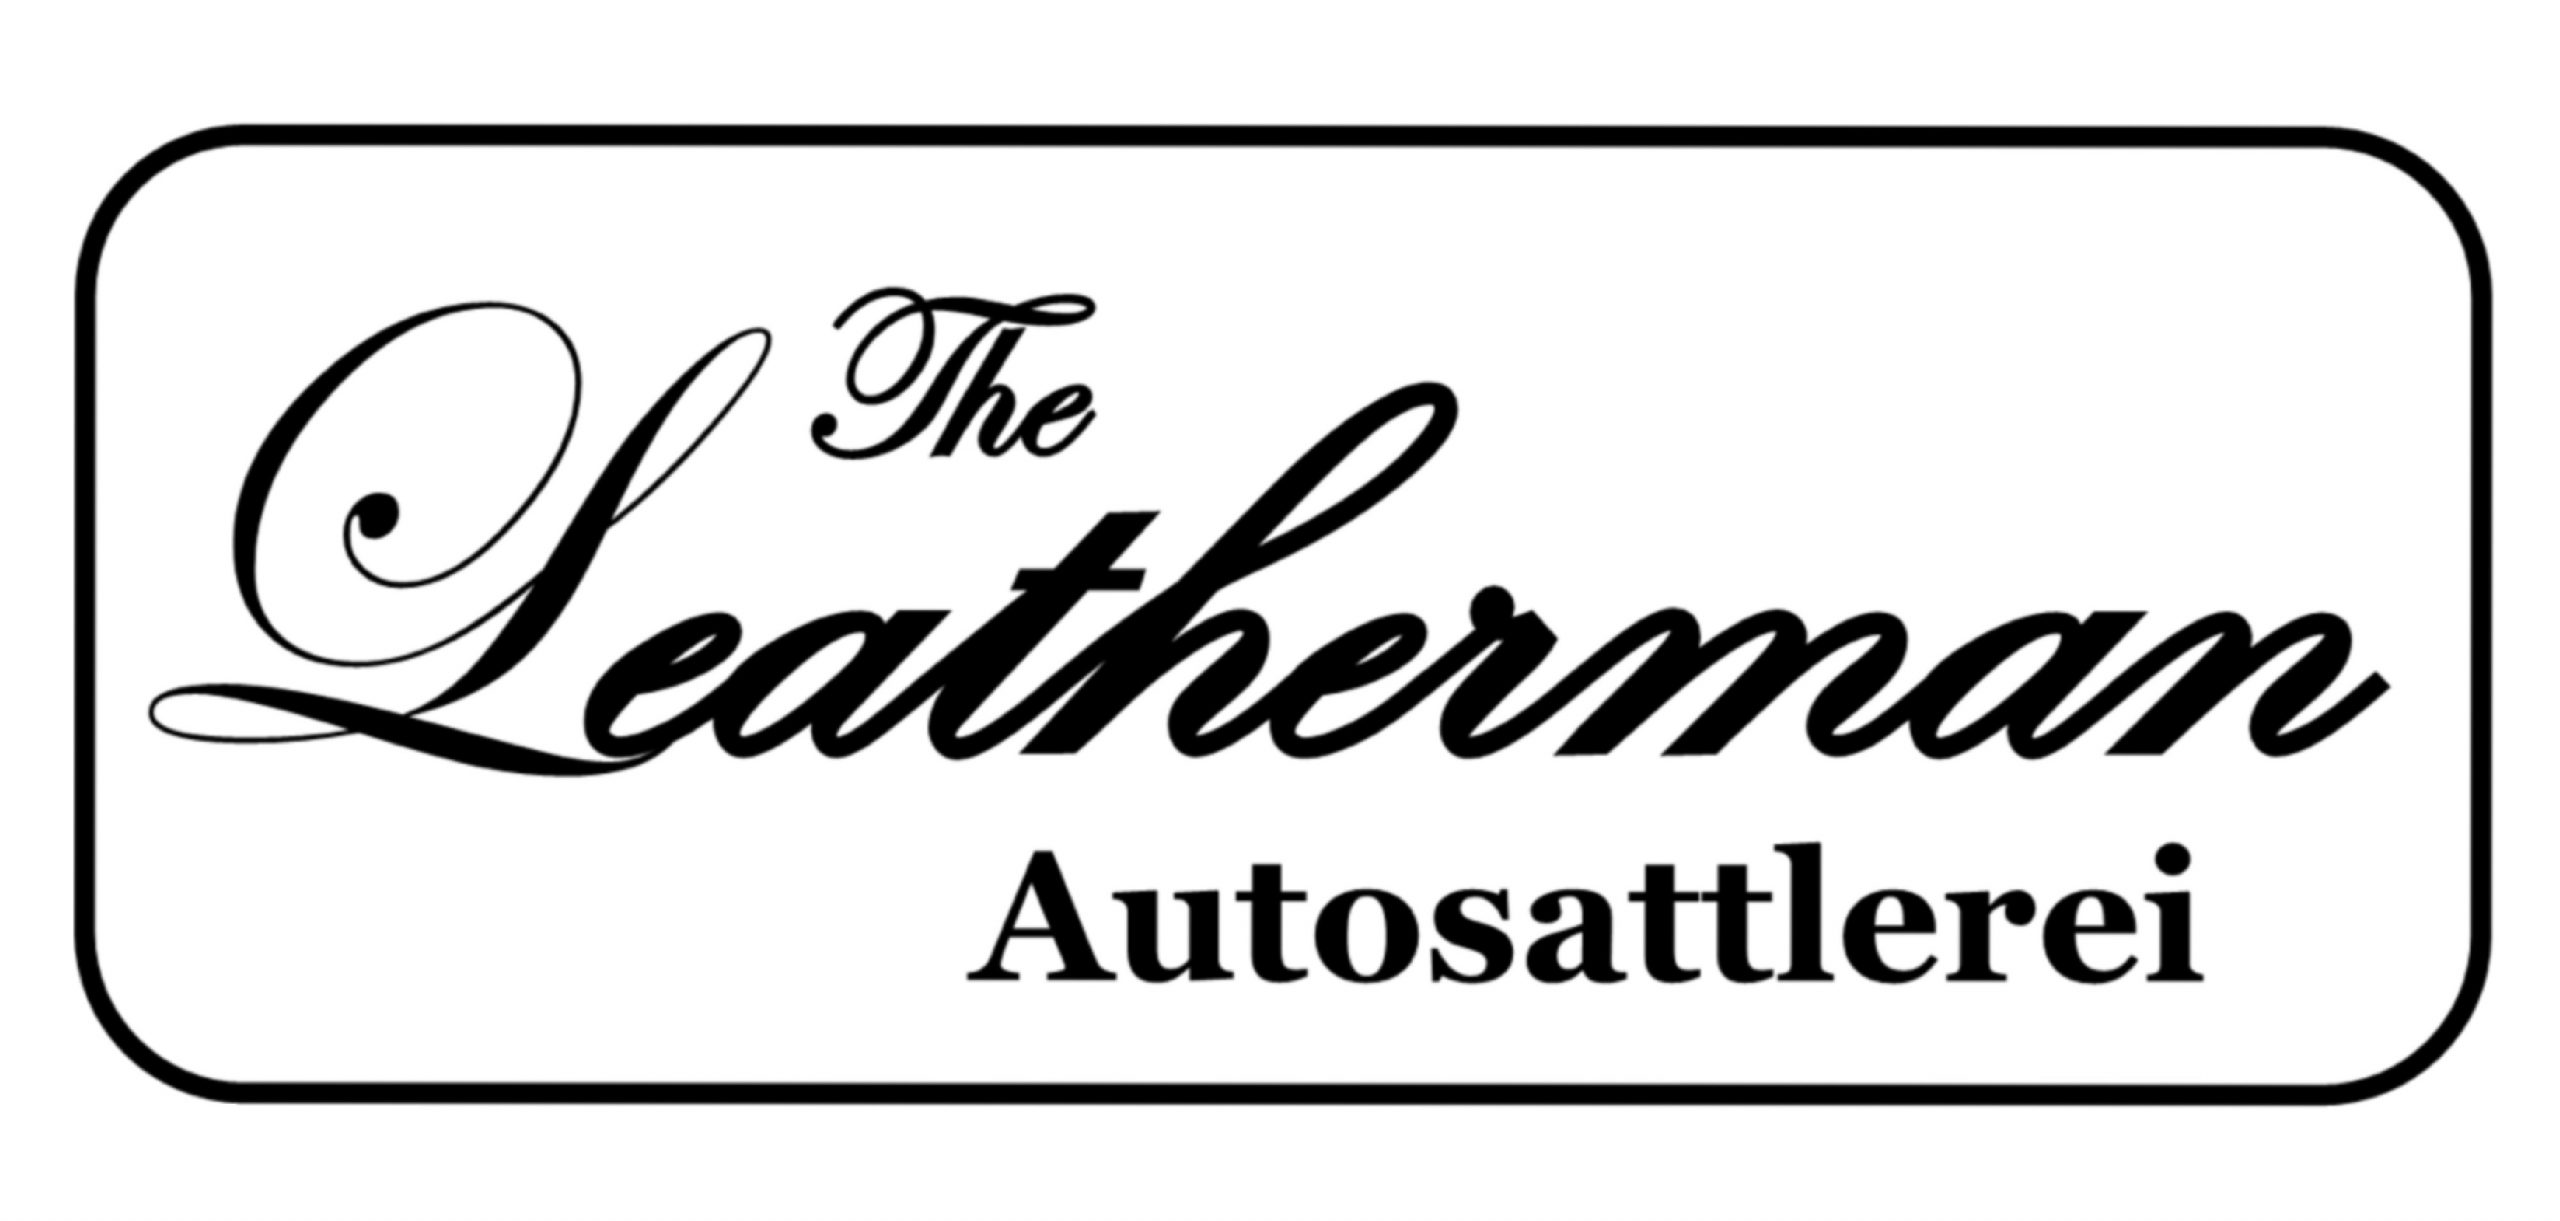 Leatherman-Autosattlerei